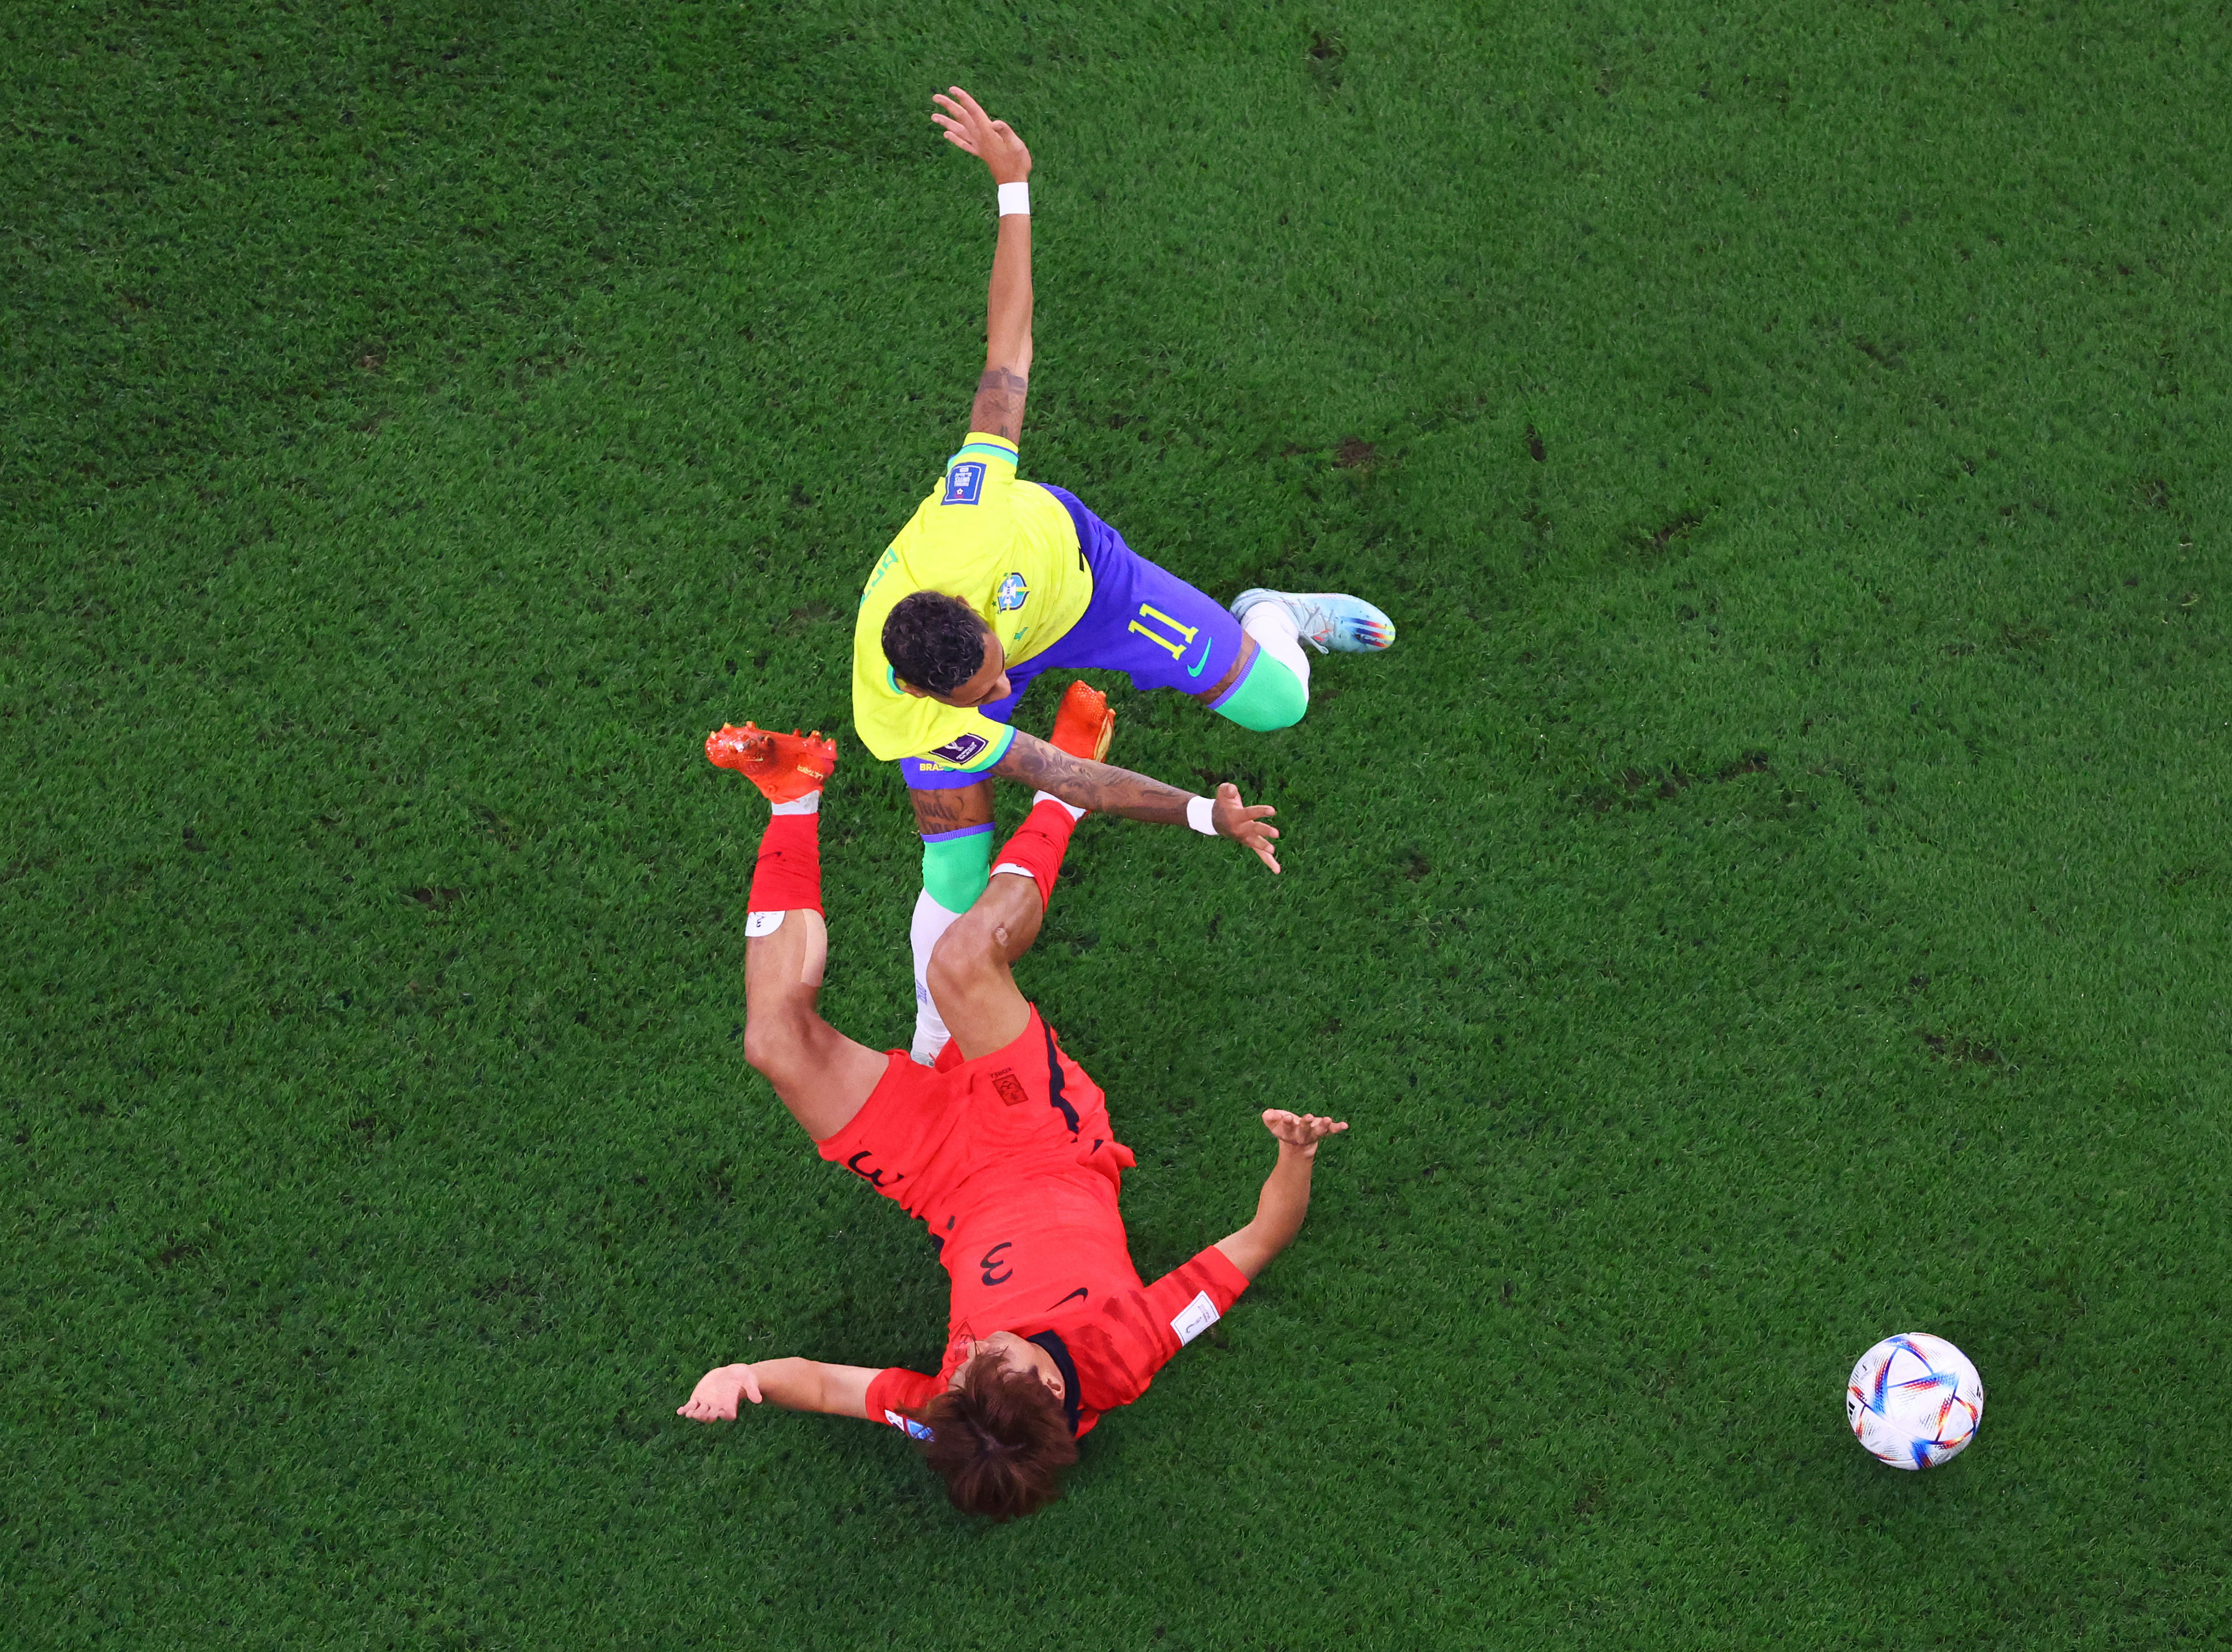 Korea's Kim Jin-no puede detener a Raphinha en el inicio de la jugada del gol de Brasil. Foto: REUTERS/Fabrizio Bensch